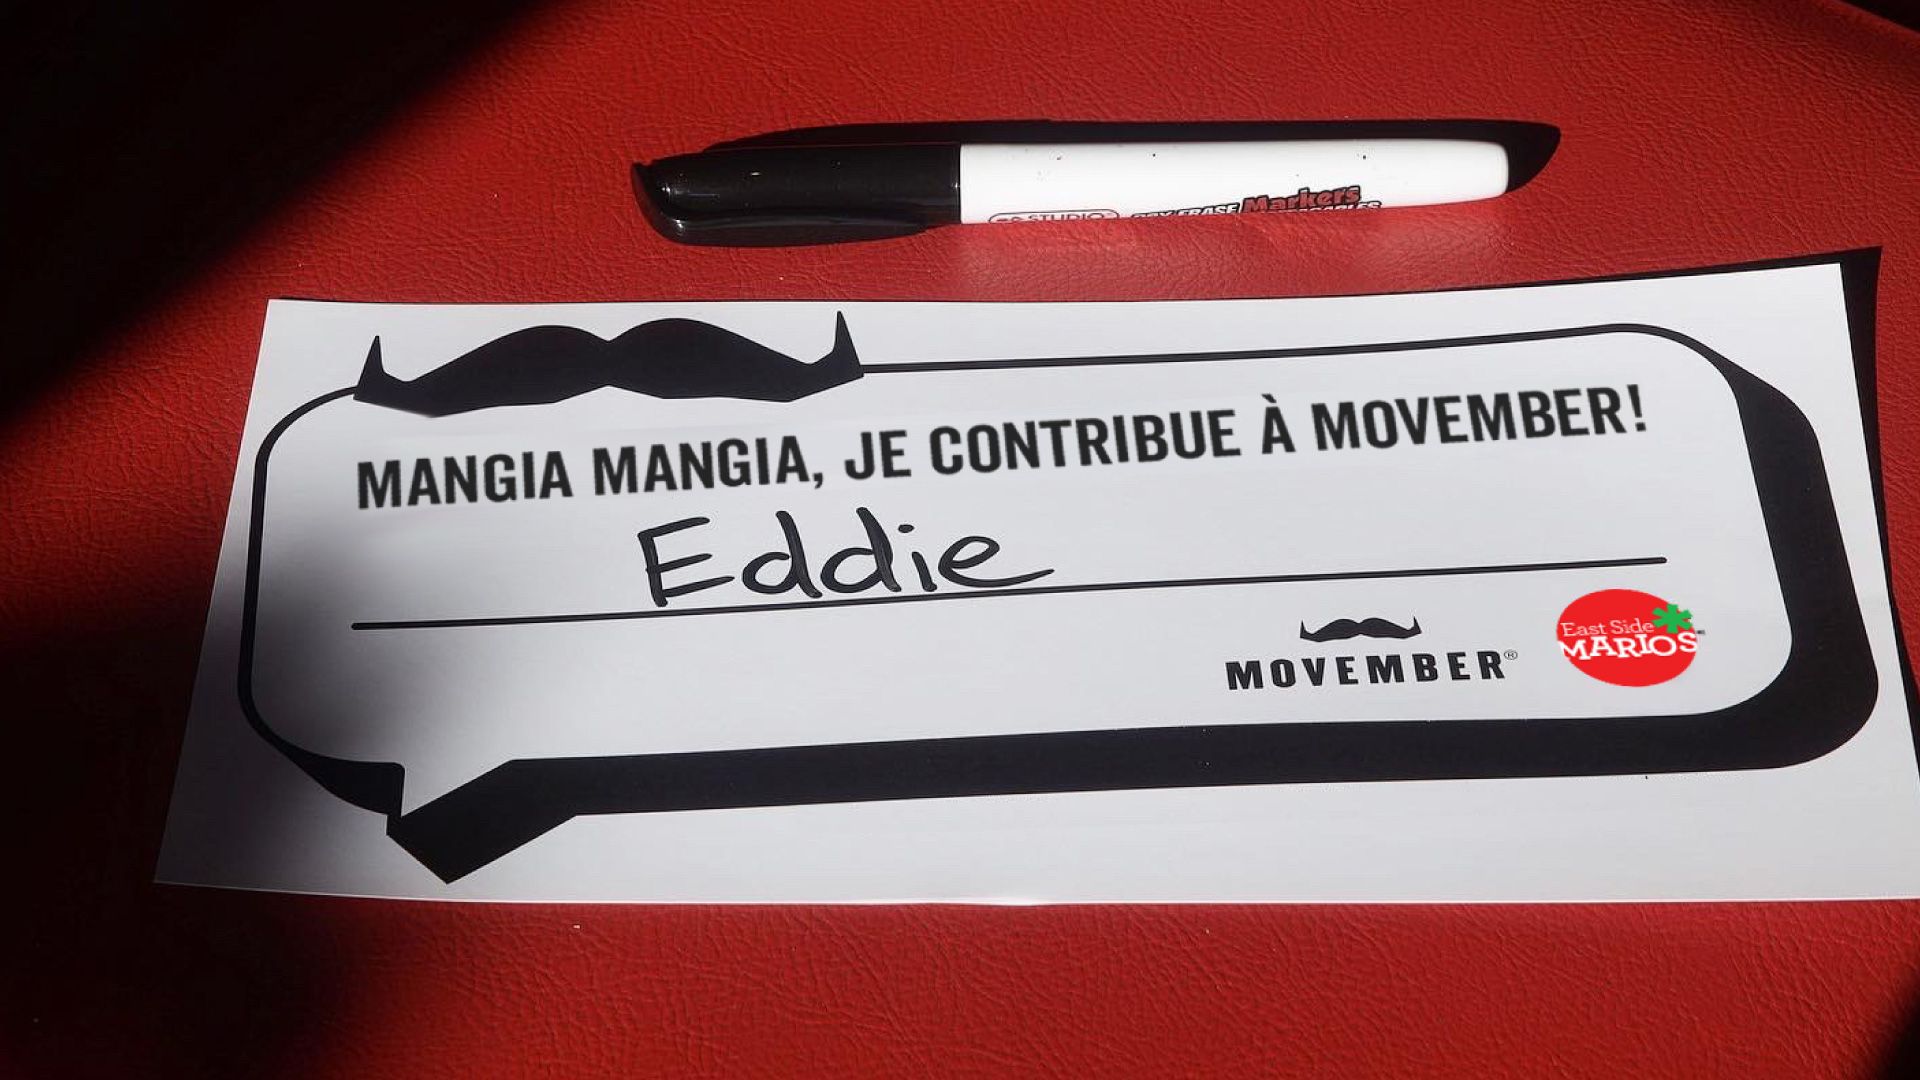  "I mangia mangiaed for Movember" apparaît sur un morceau de papier posé sur une chaise rouge de restaurant.